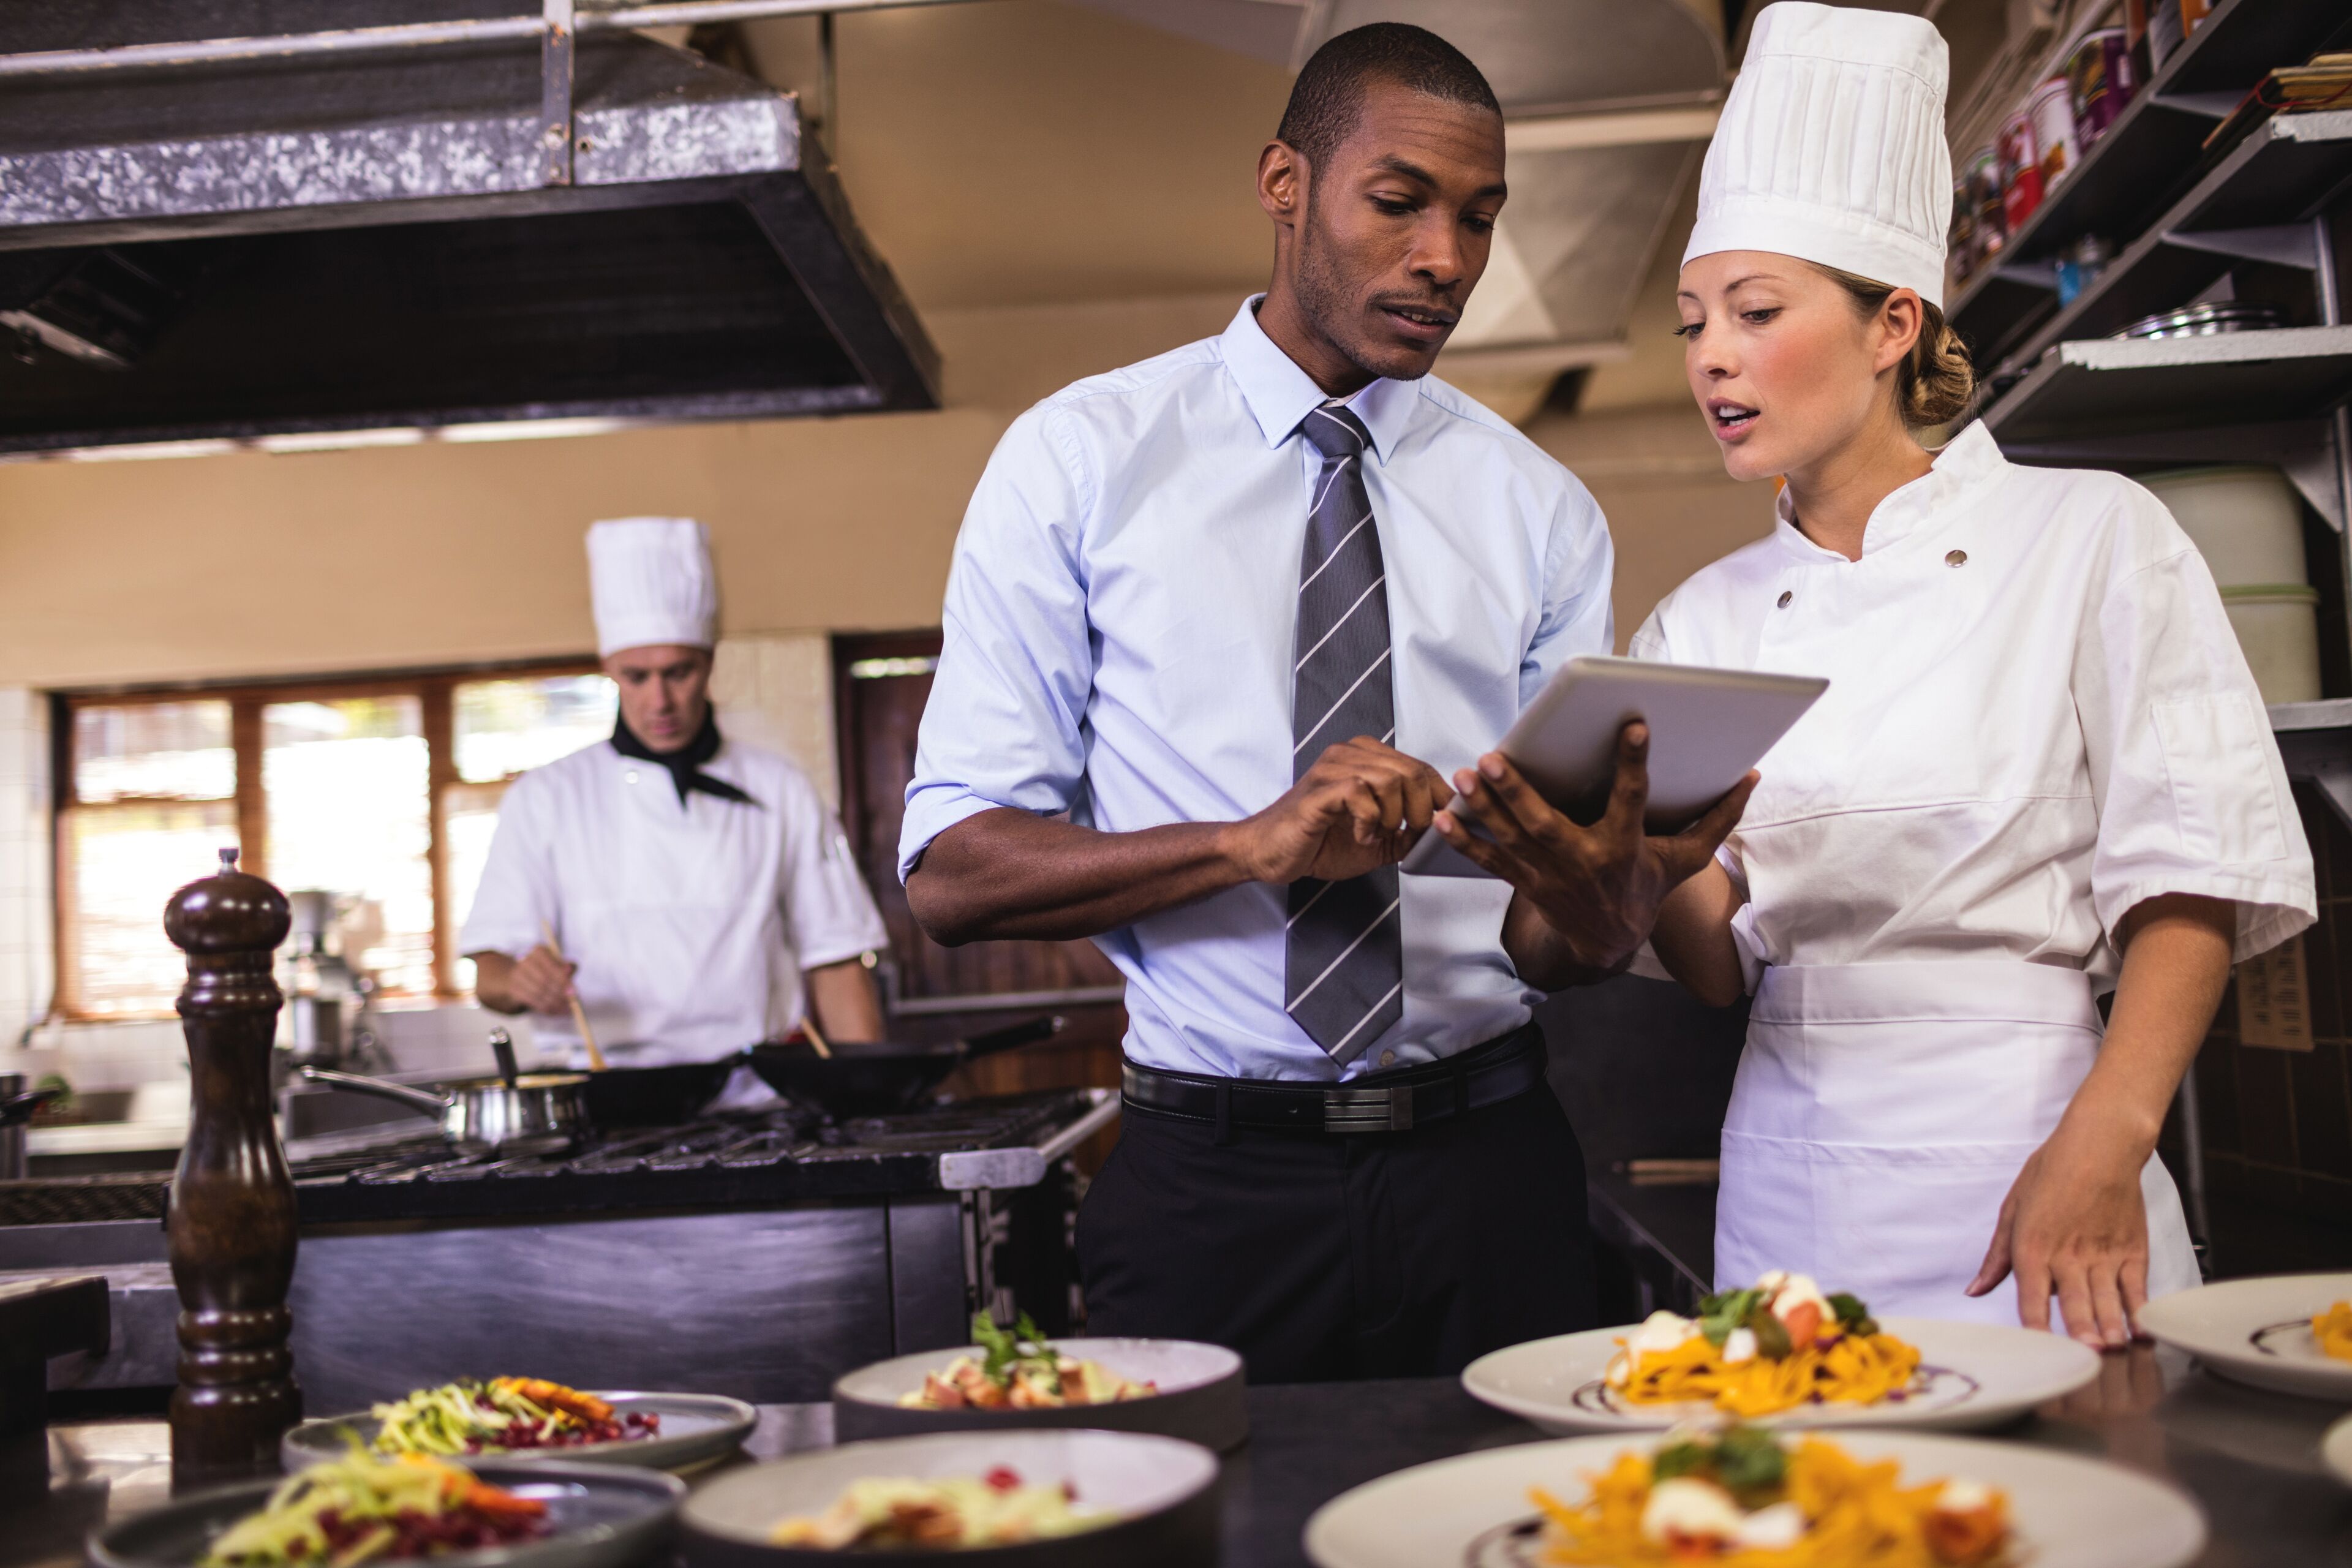 Un serveur et une cheffe discutent avec une tablette numérique dans la cuisine animée d'un restaurant, des plats prêts à être servis au premier plan.